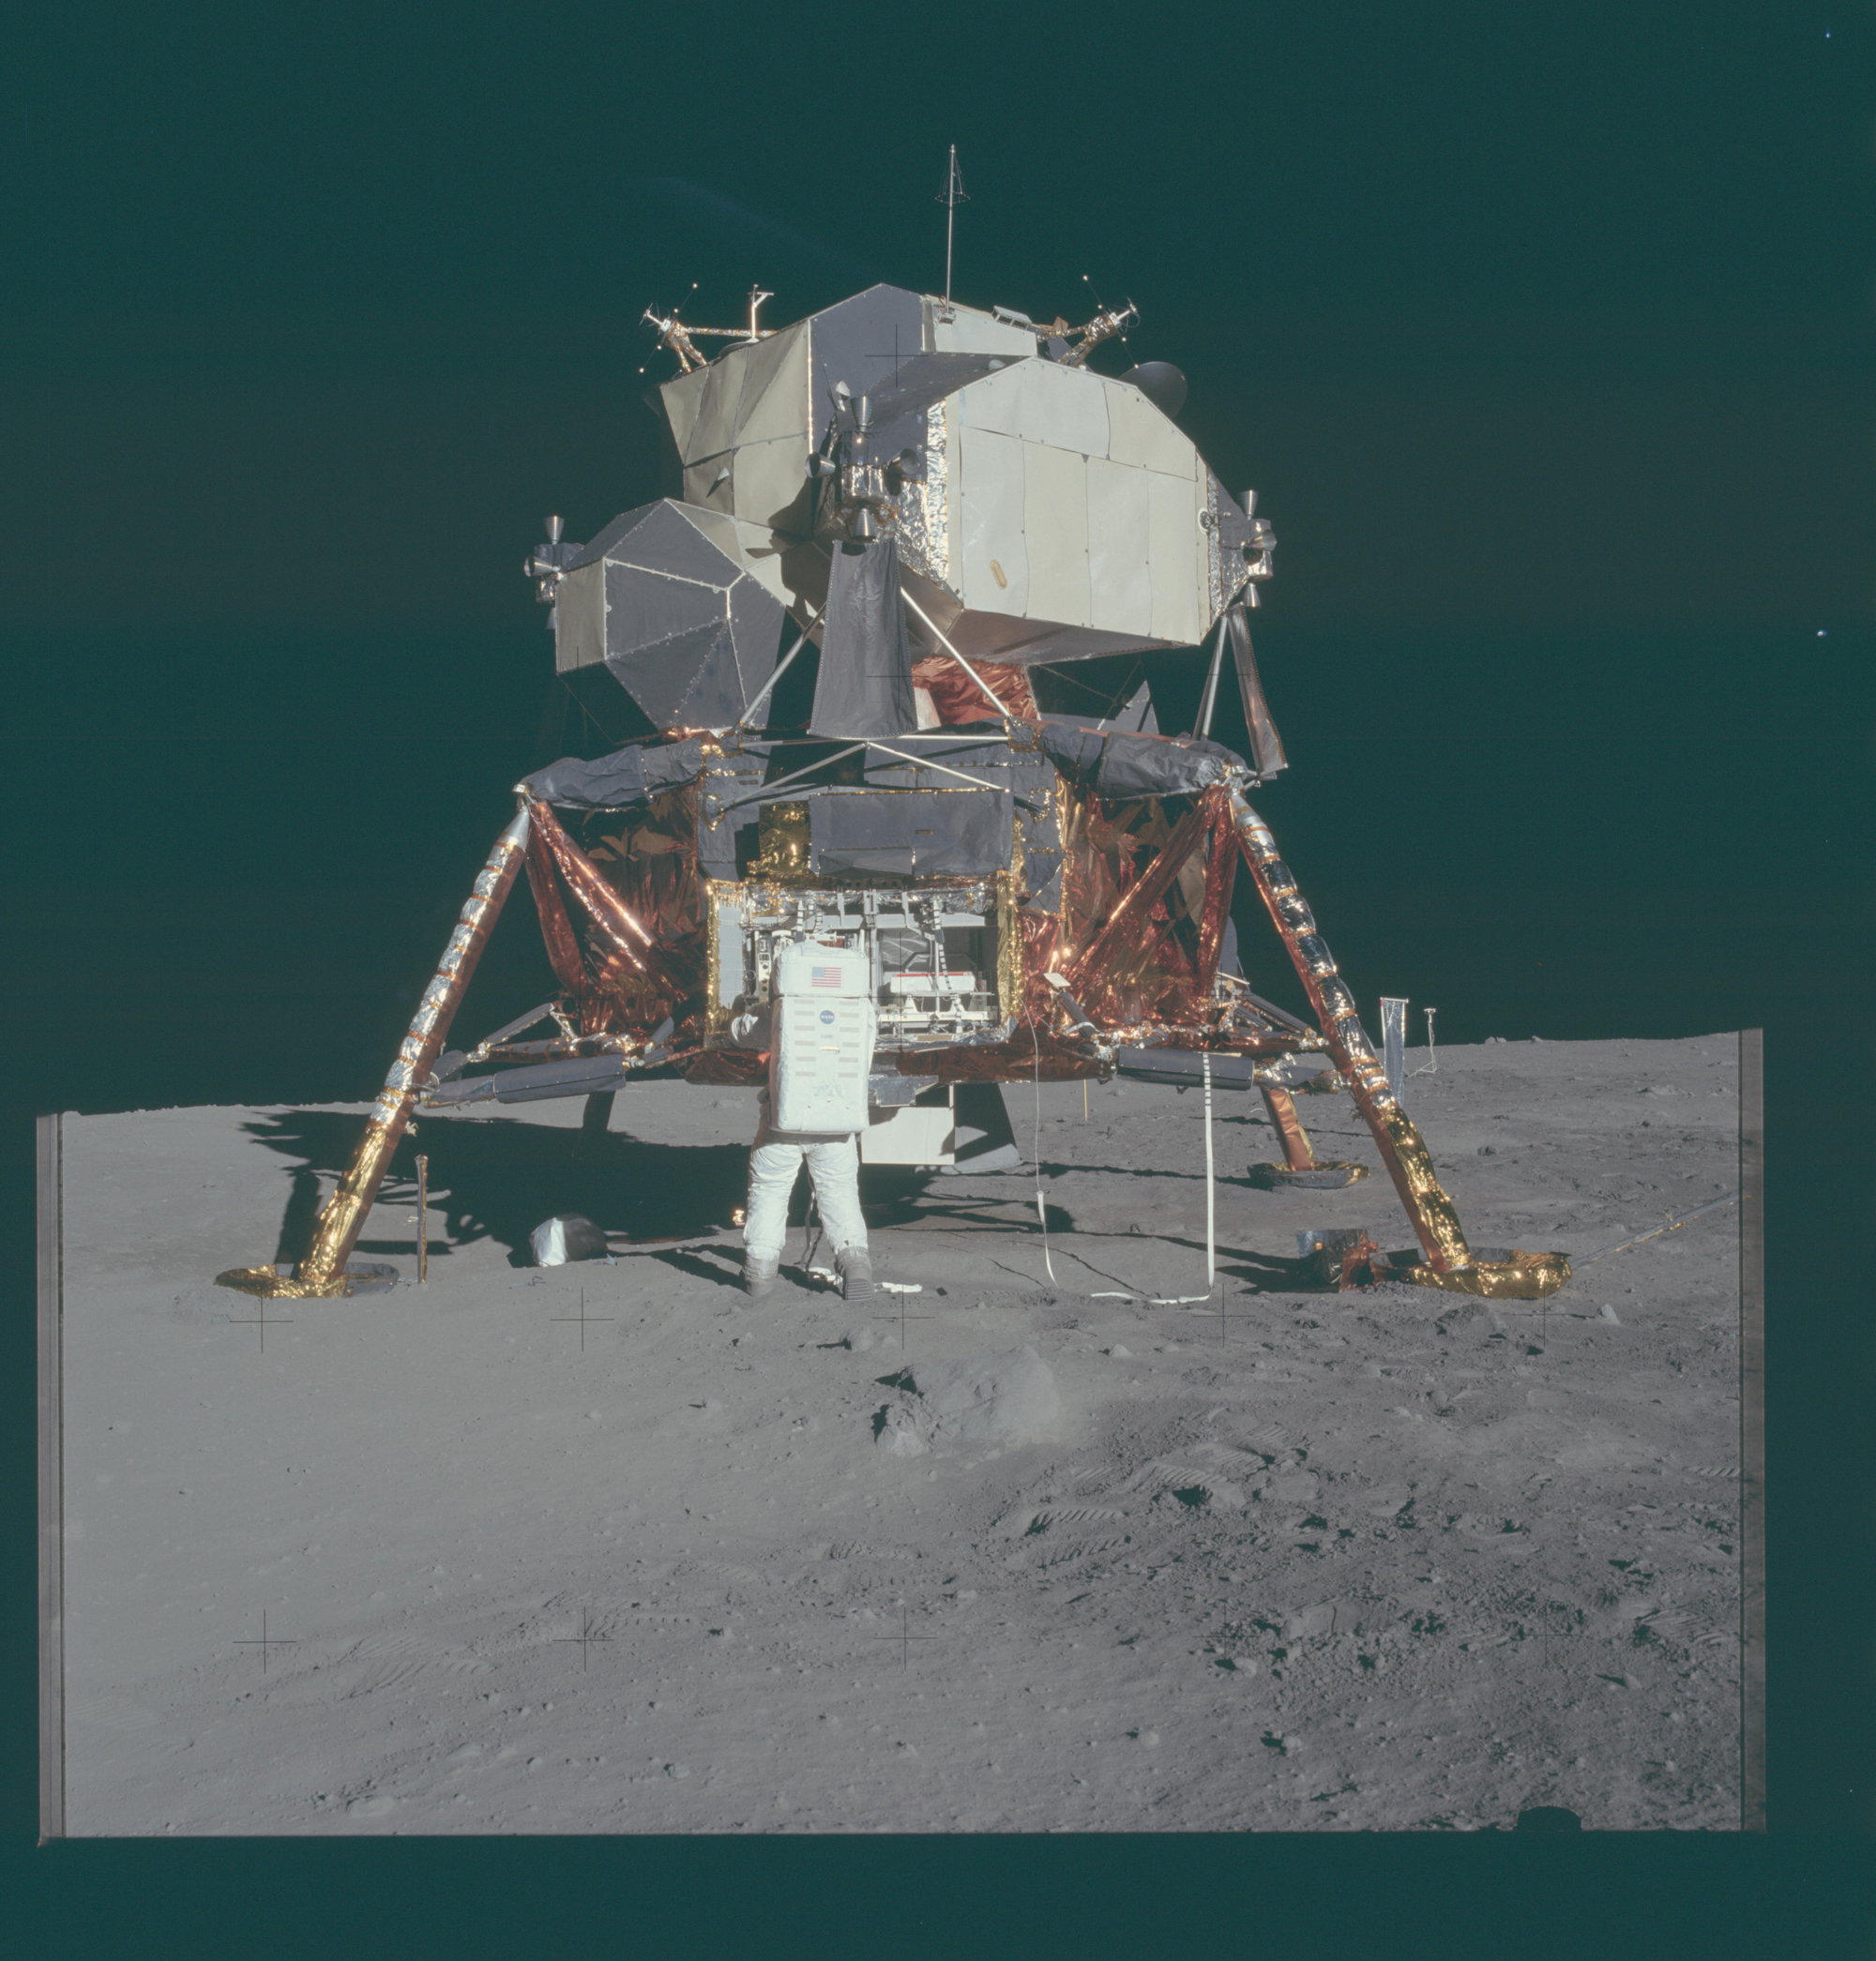 Bild des Mondlanders auf dem Mond, davor ein Astronaut von hinten. Foto: NASA